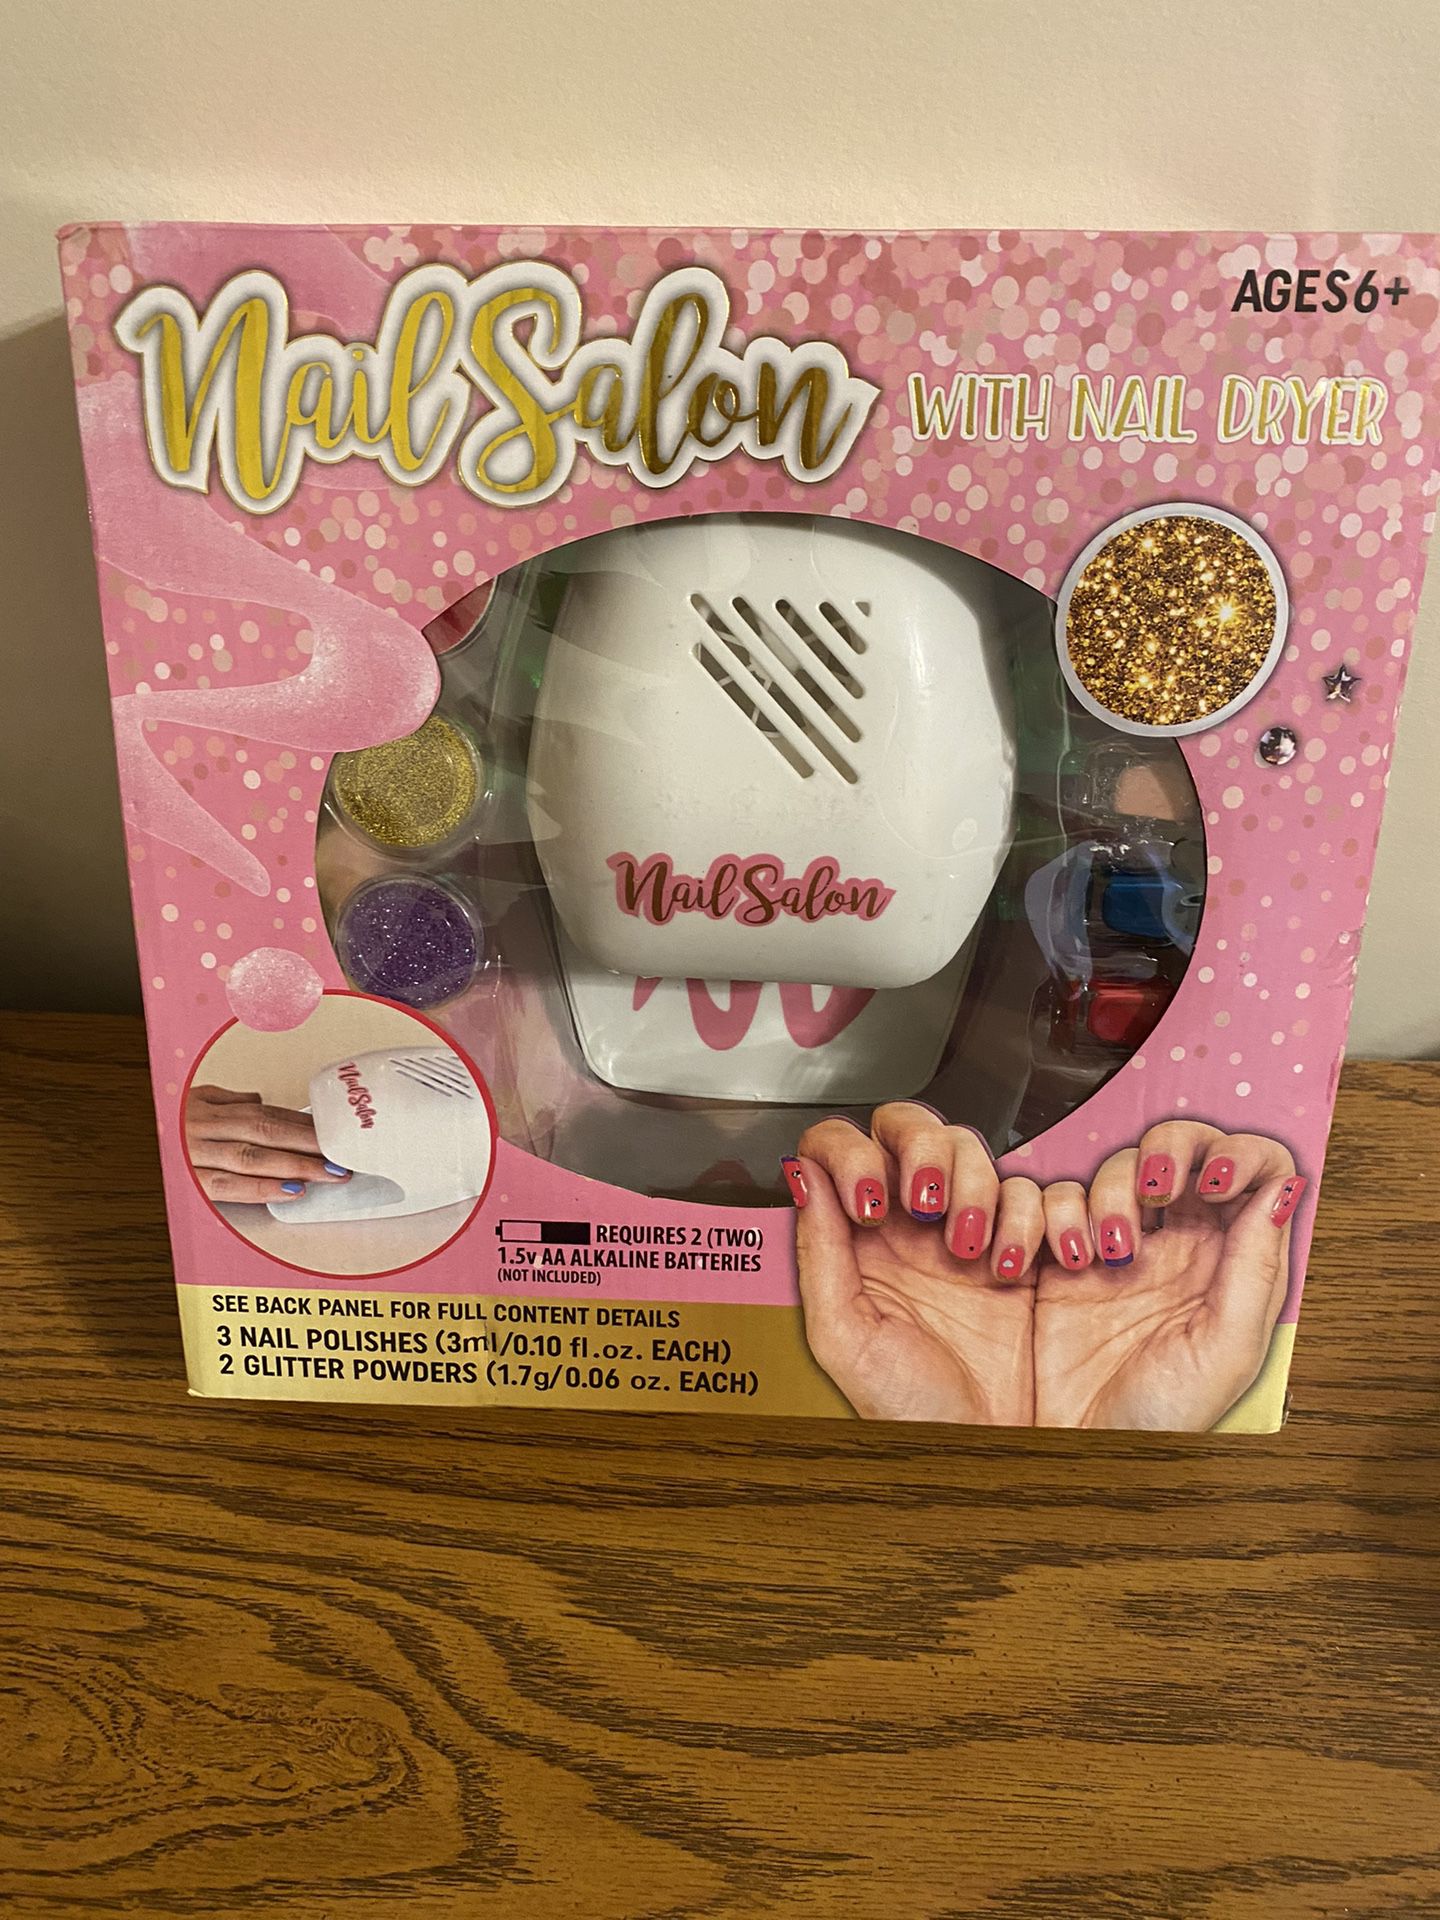 Nib Nail Salon With Nail Dryer